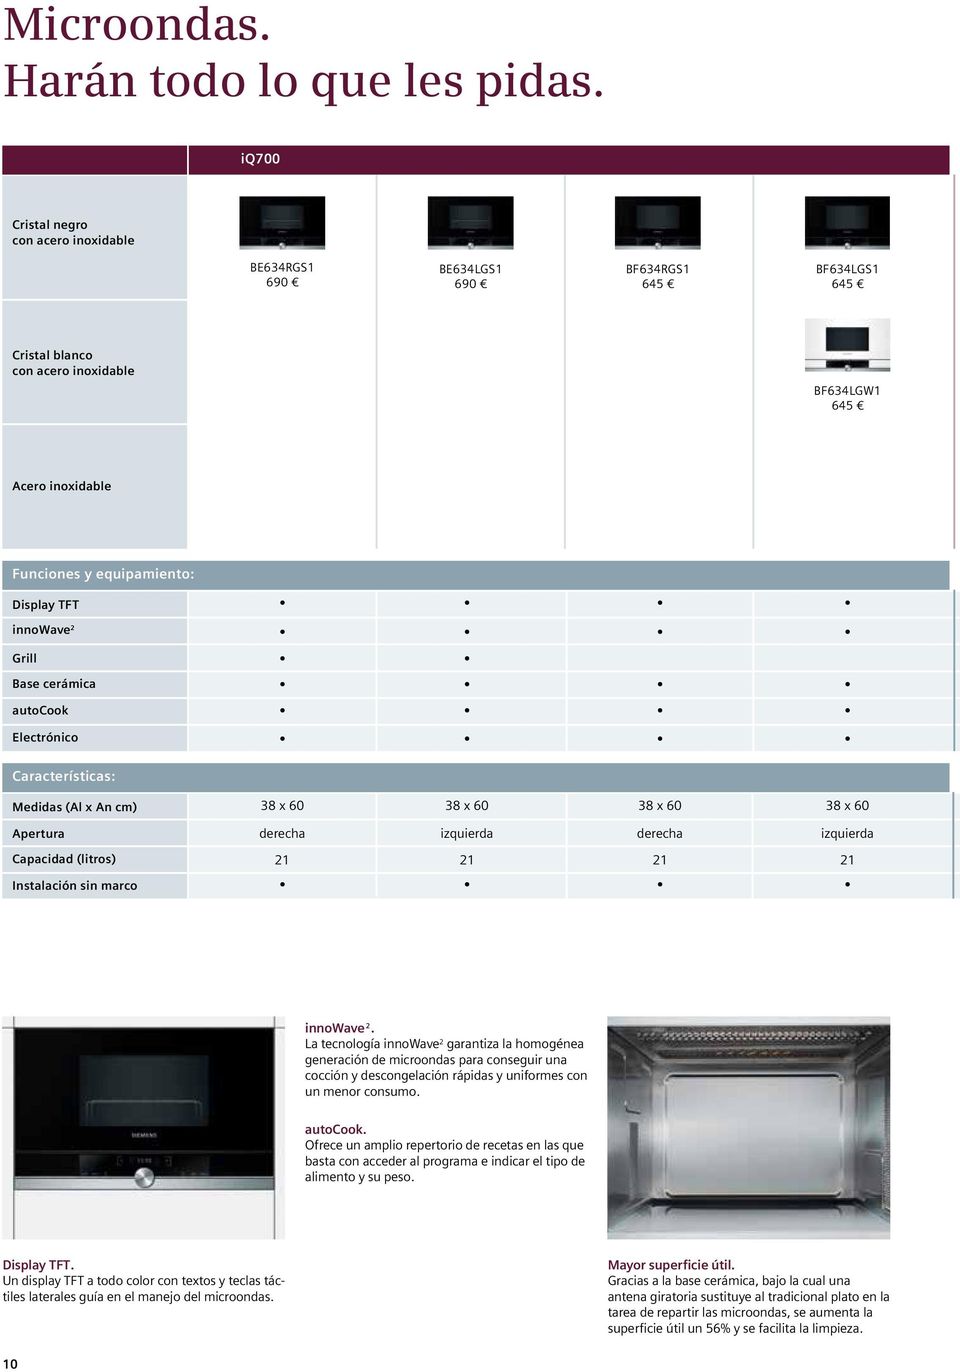 TFT innowave 2 Grill Base cerámica autocook Electrónico Características: Medidas (Al x An cm) Apertura Capacidad (litros) Instalación sin marco 38 x 60 38 x 60 38 x 60 38 x 60 derecha izquierda